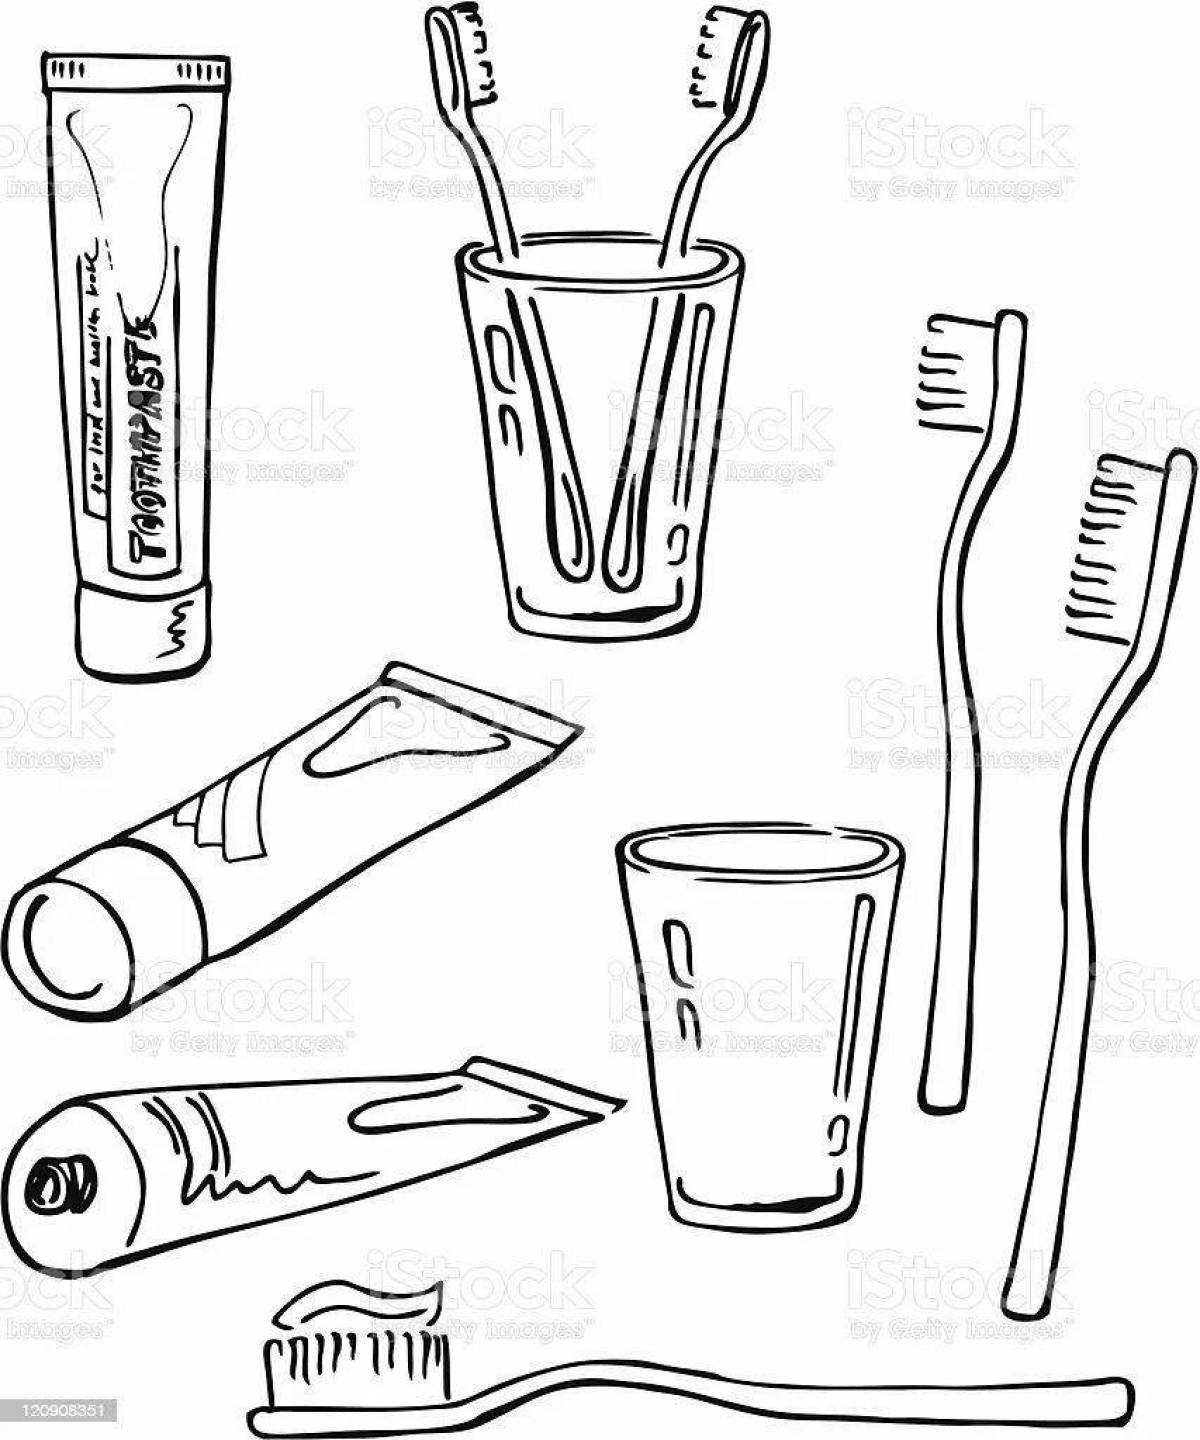 Hygiene items for children #1